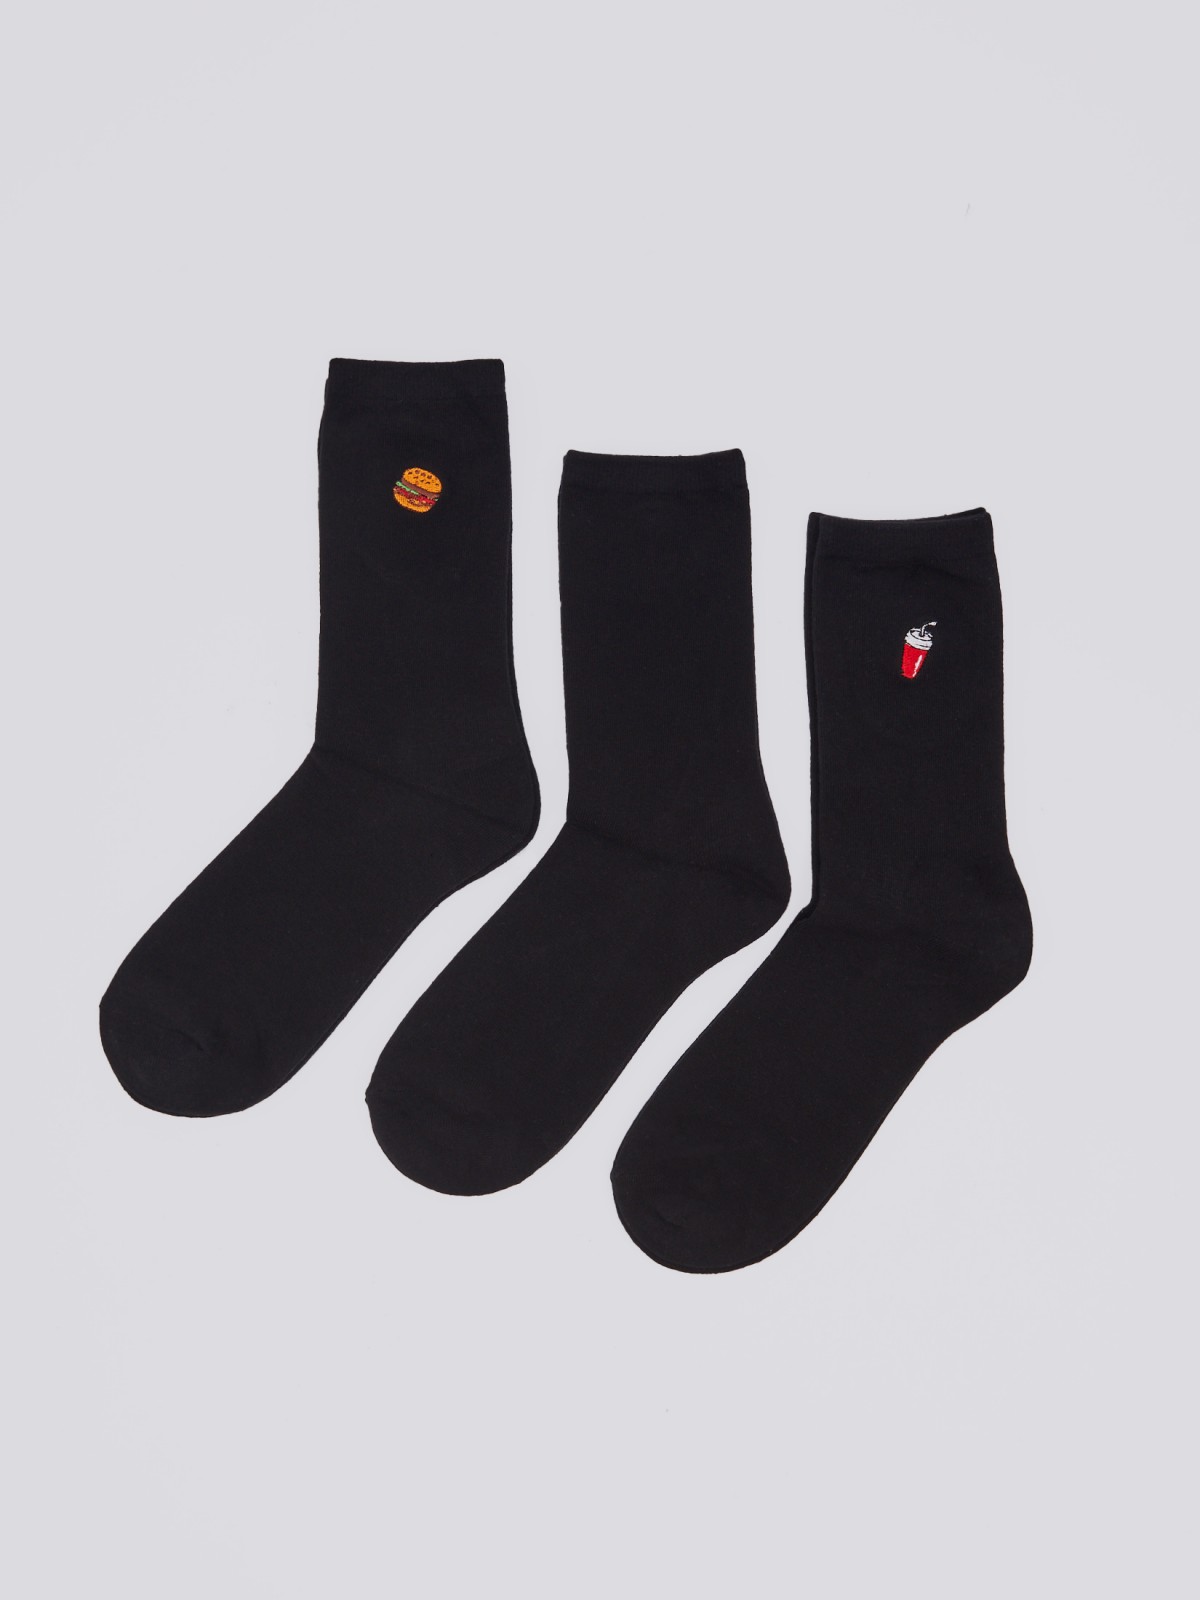 Набор носков (3 пары в комплекте) zolla 01411995P165, цвет черный, размер 25-27 - фото 1